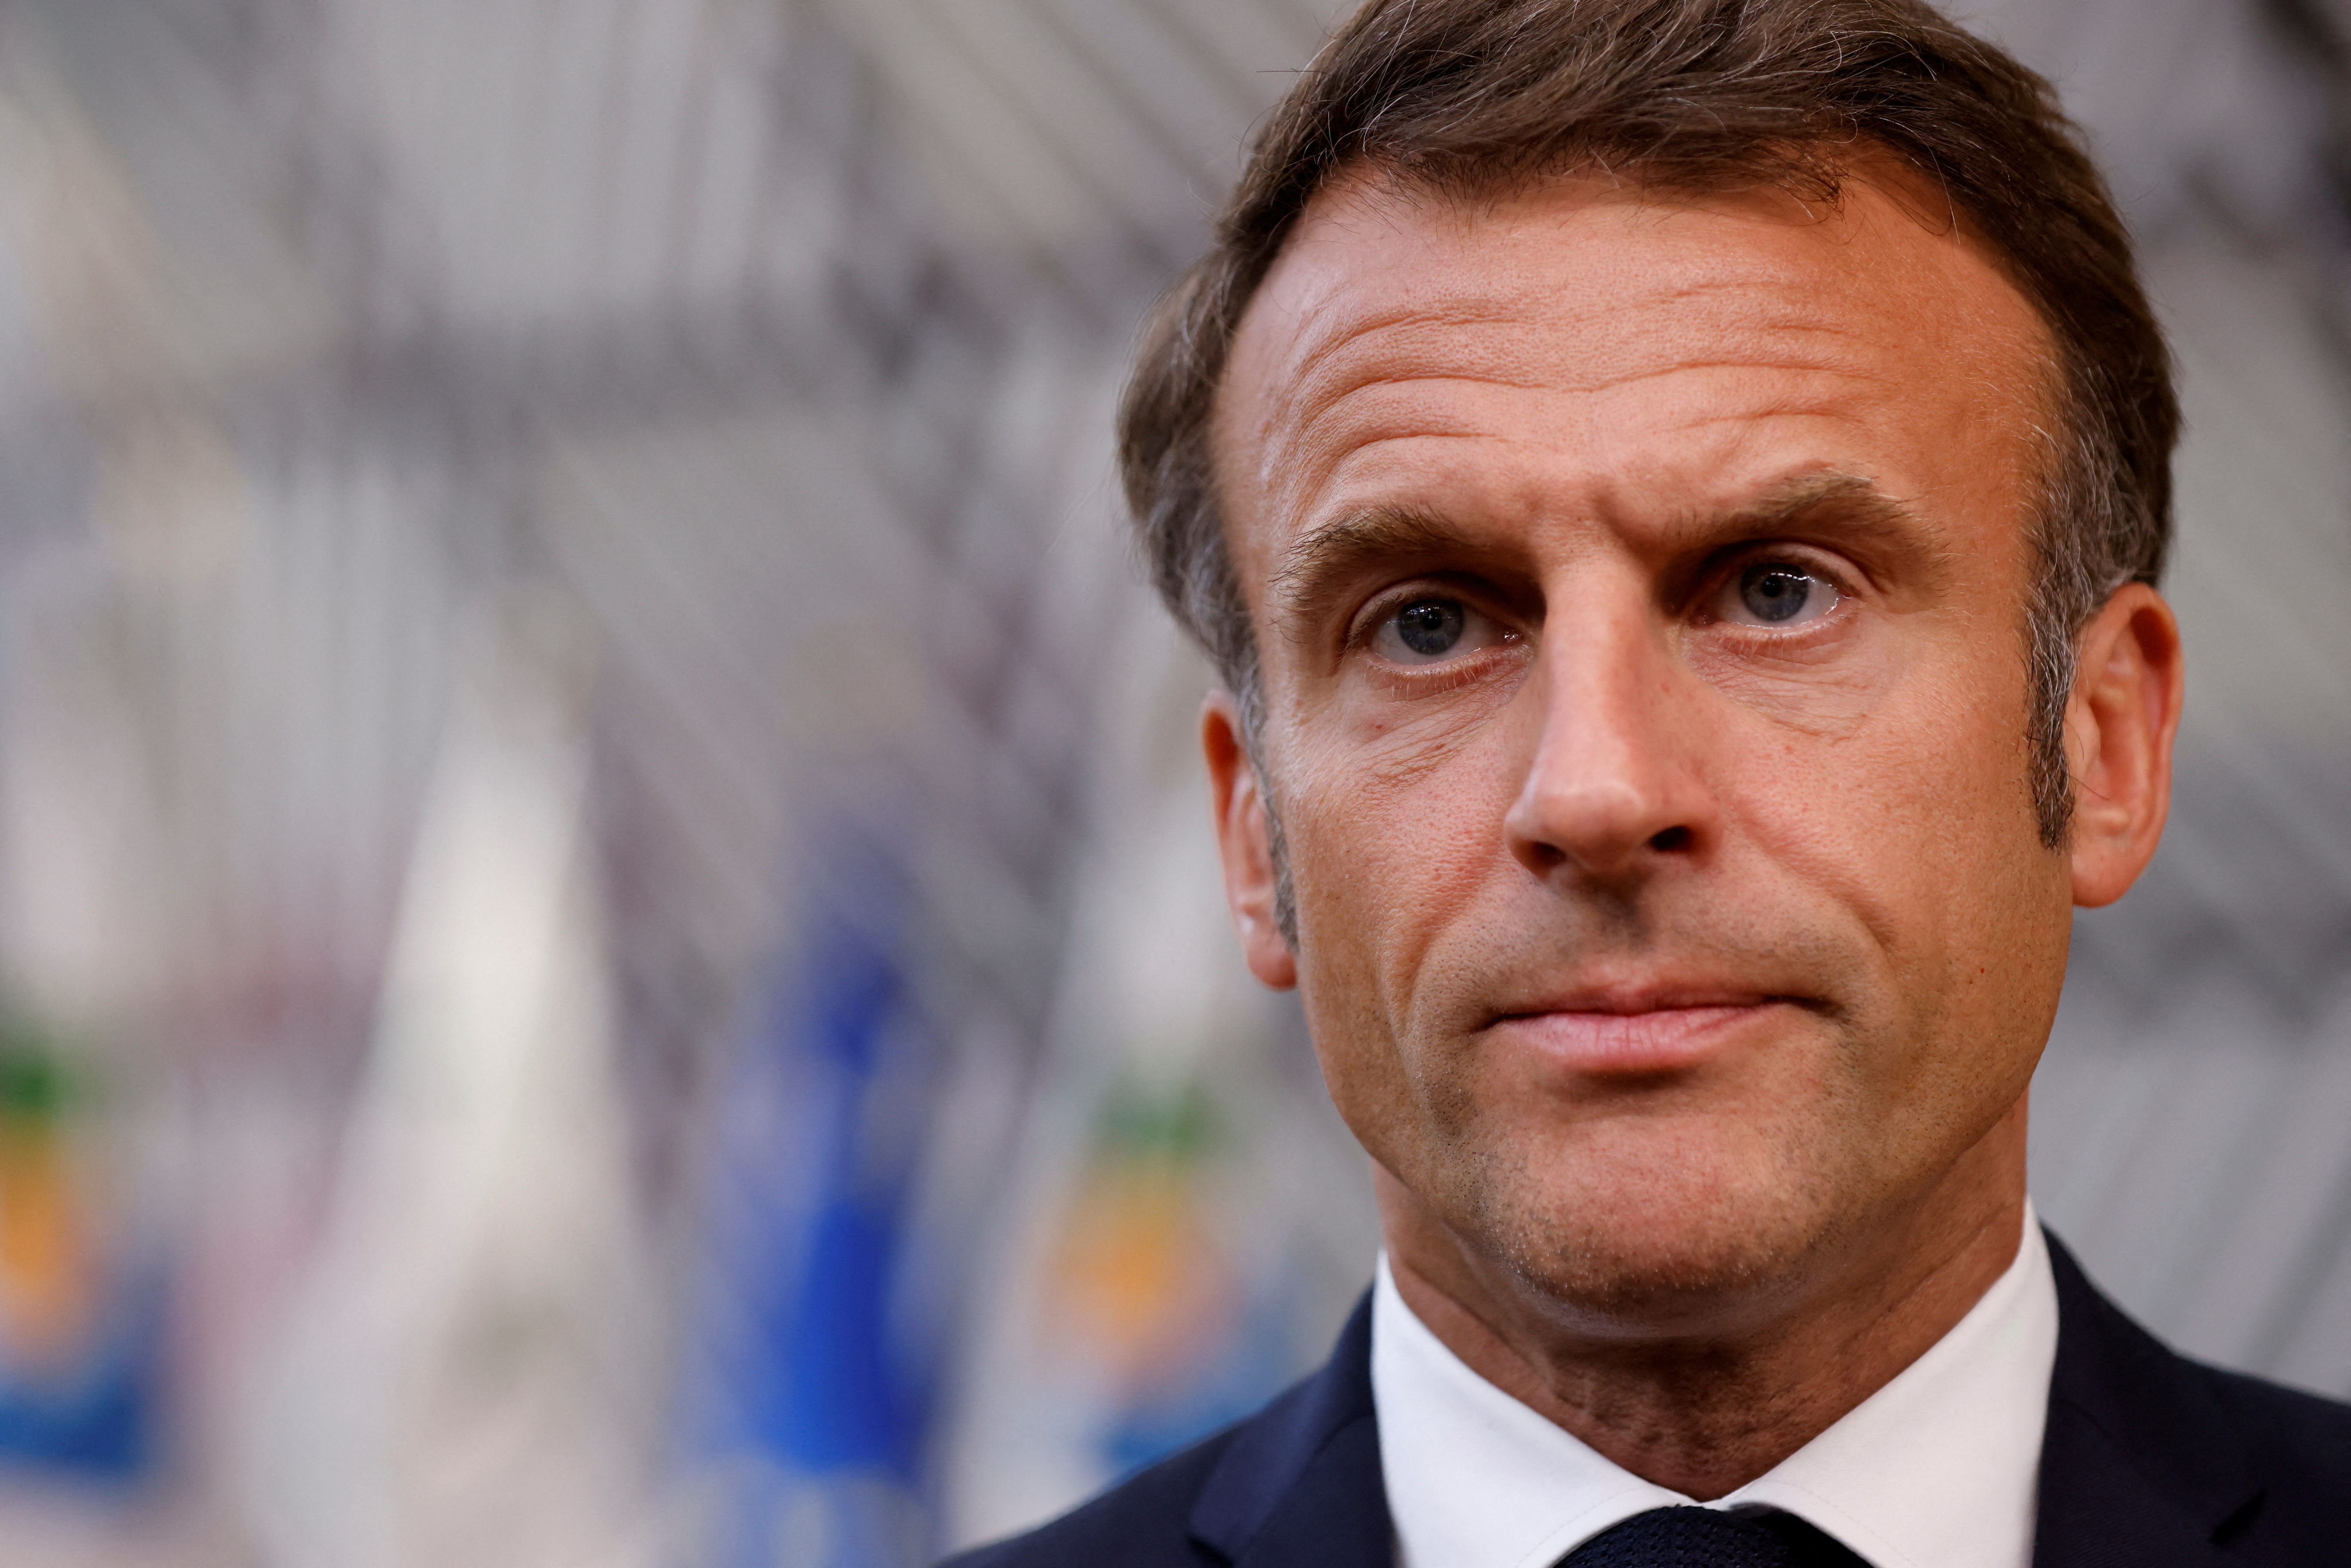 Fiscalité : Emmanuel Macron confirme la baisse d'impôt de deux milliards d'euros d'ici la fin du quinquennat